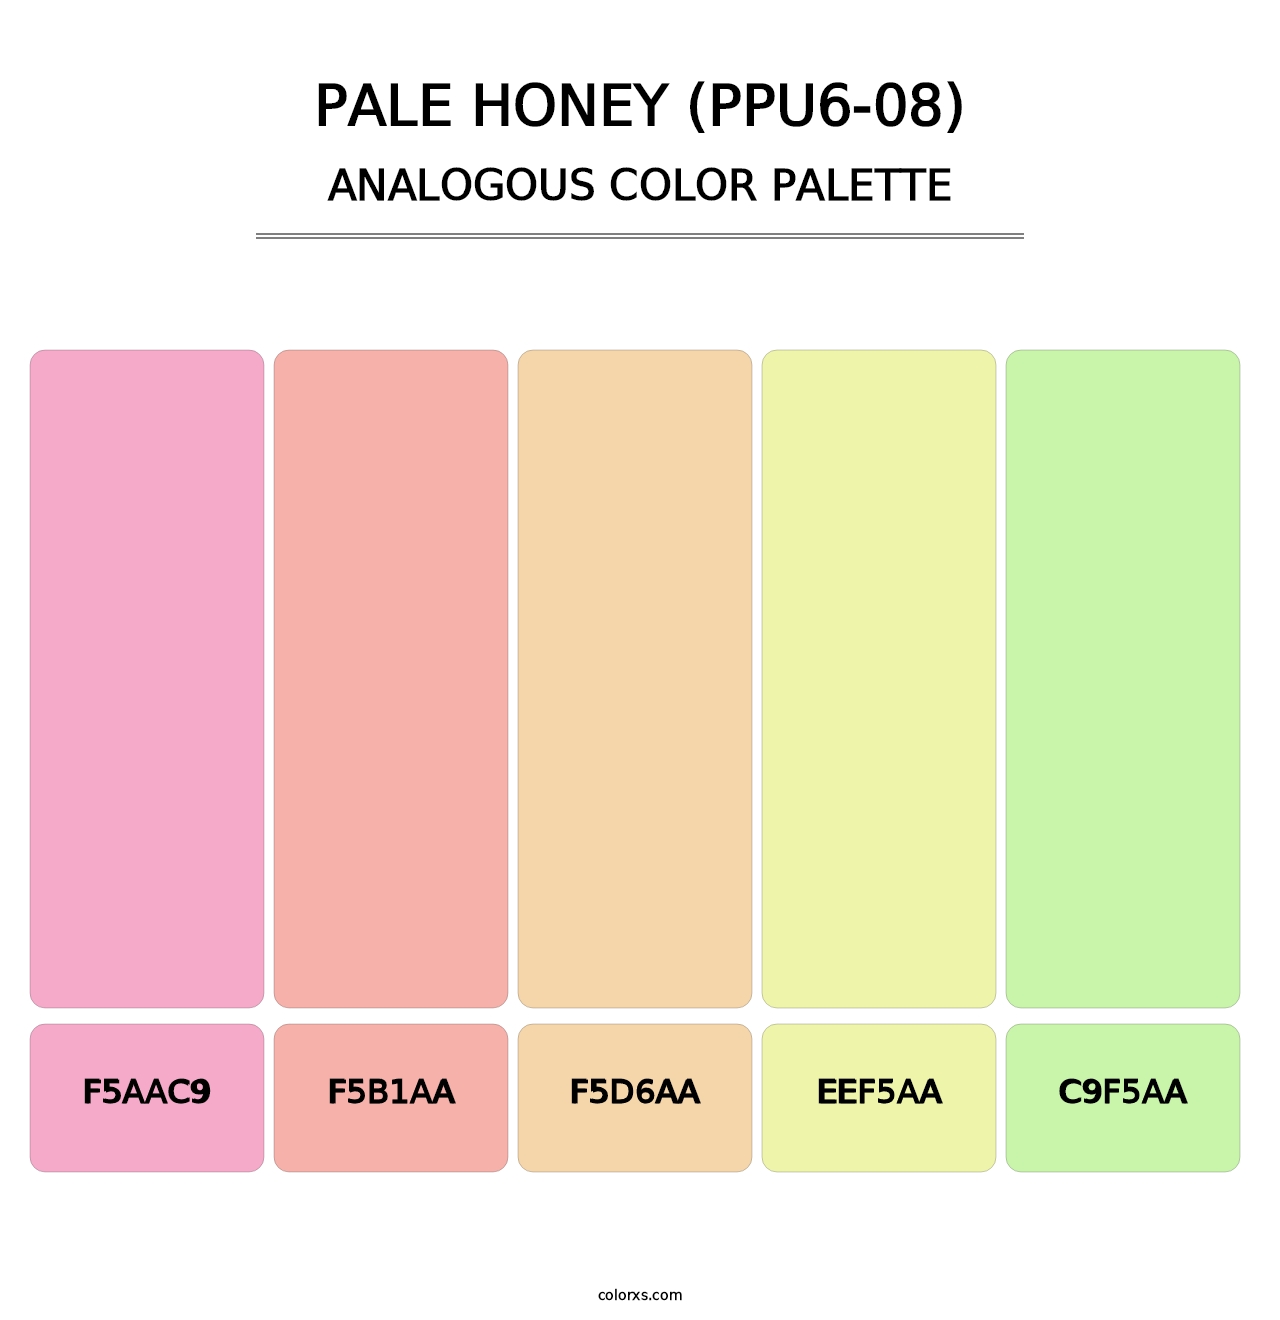 Pale Honey (PPU6-08) - Analogous Color Palette